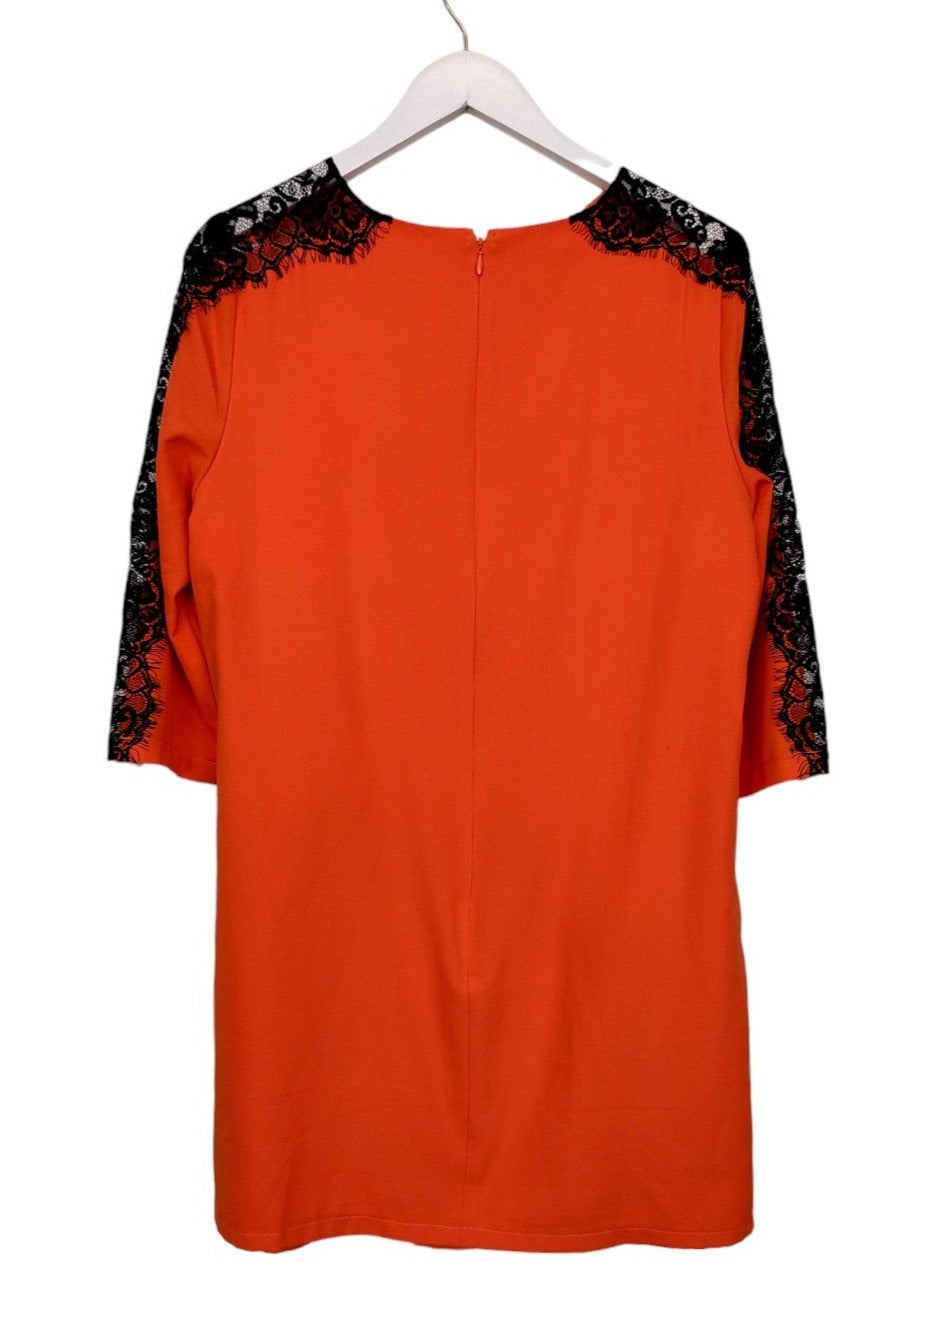 Μίνι, Μακρυμάνικο Φόρεμα PAPER DOLLS με Δαντέλα σε Πορτοκαλί χρώμα (Medium)